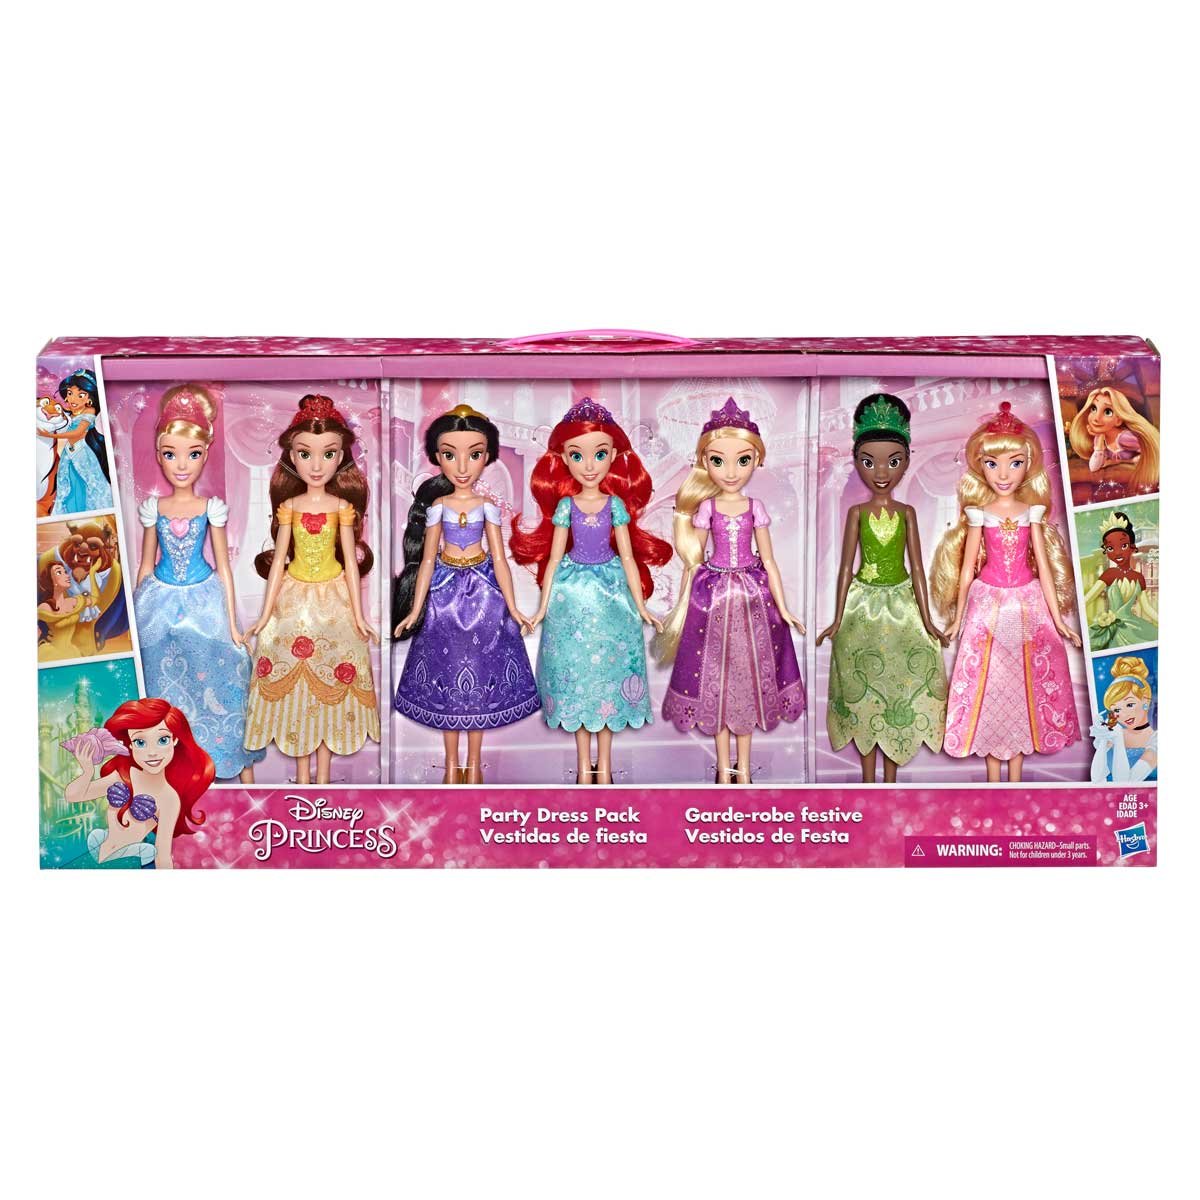 Princesas Fashion Collection Hasbro